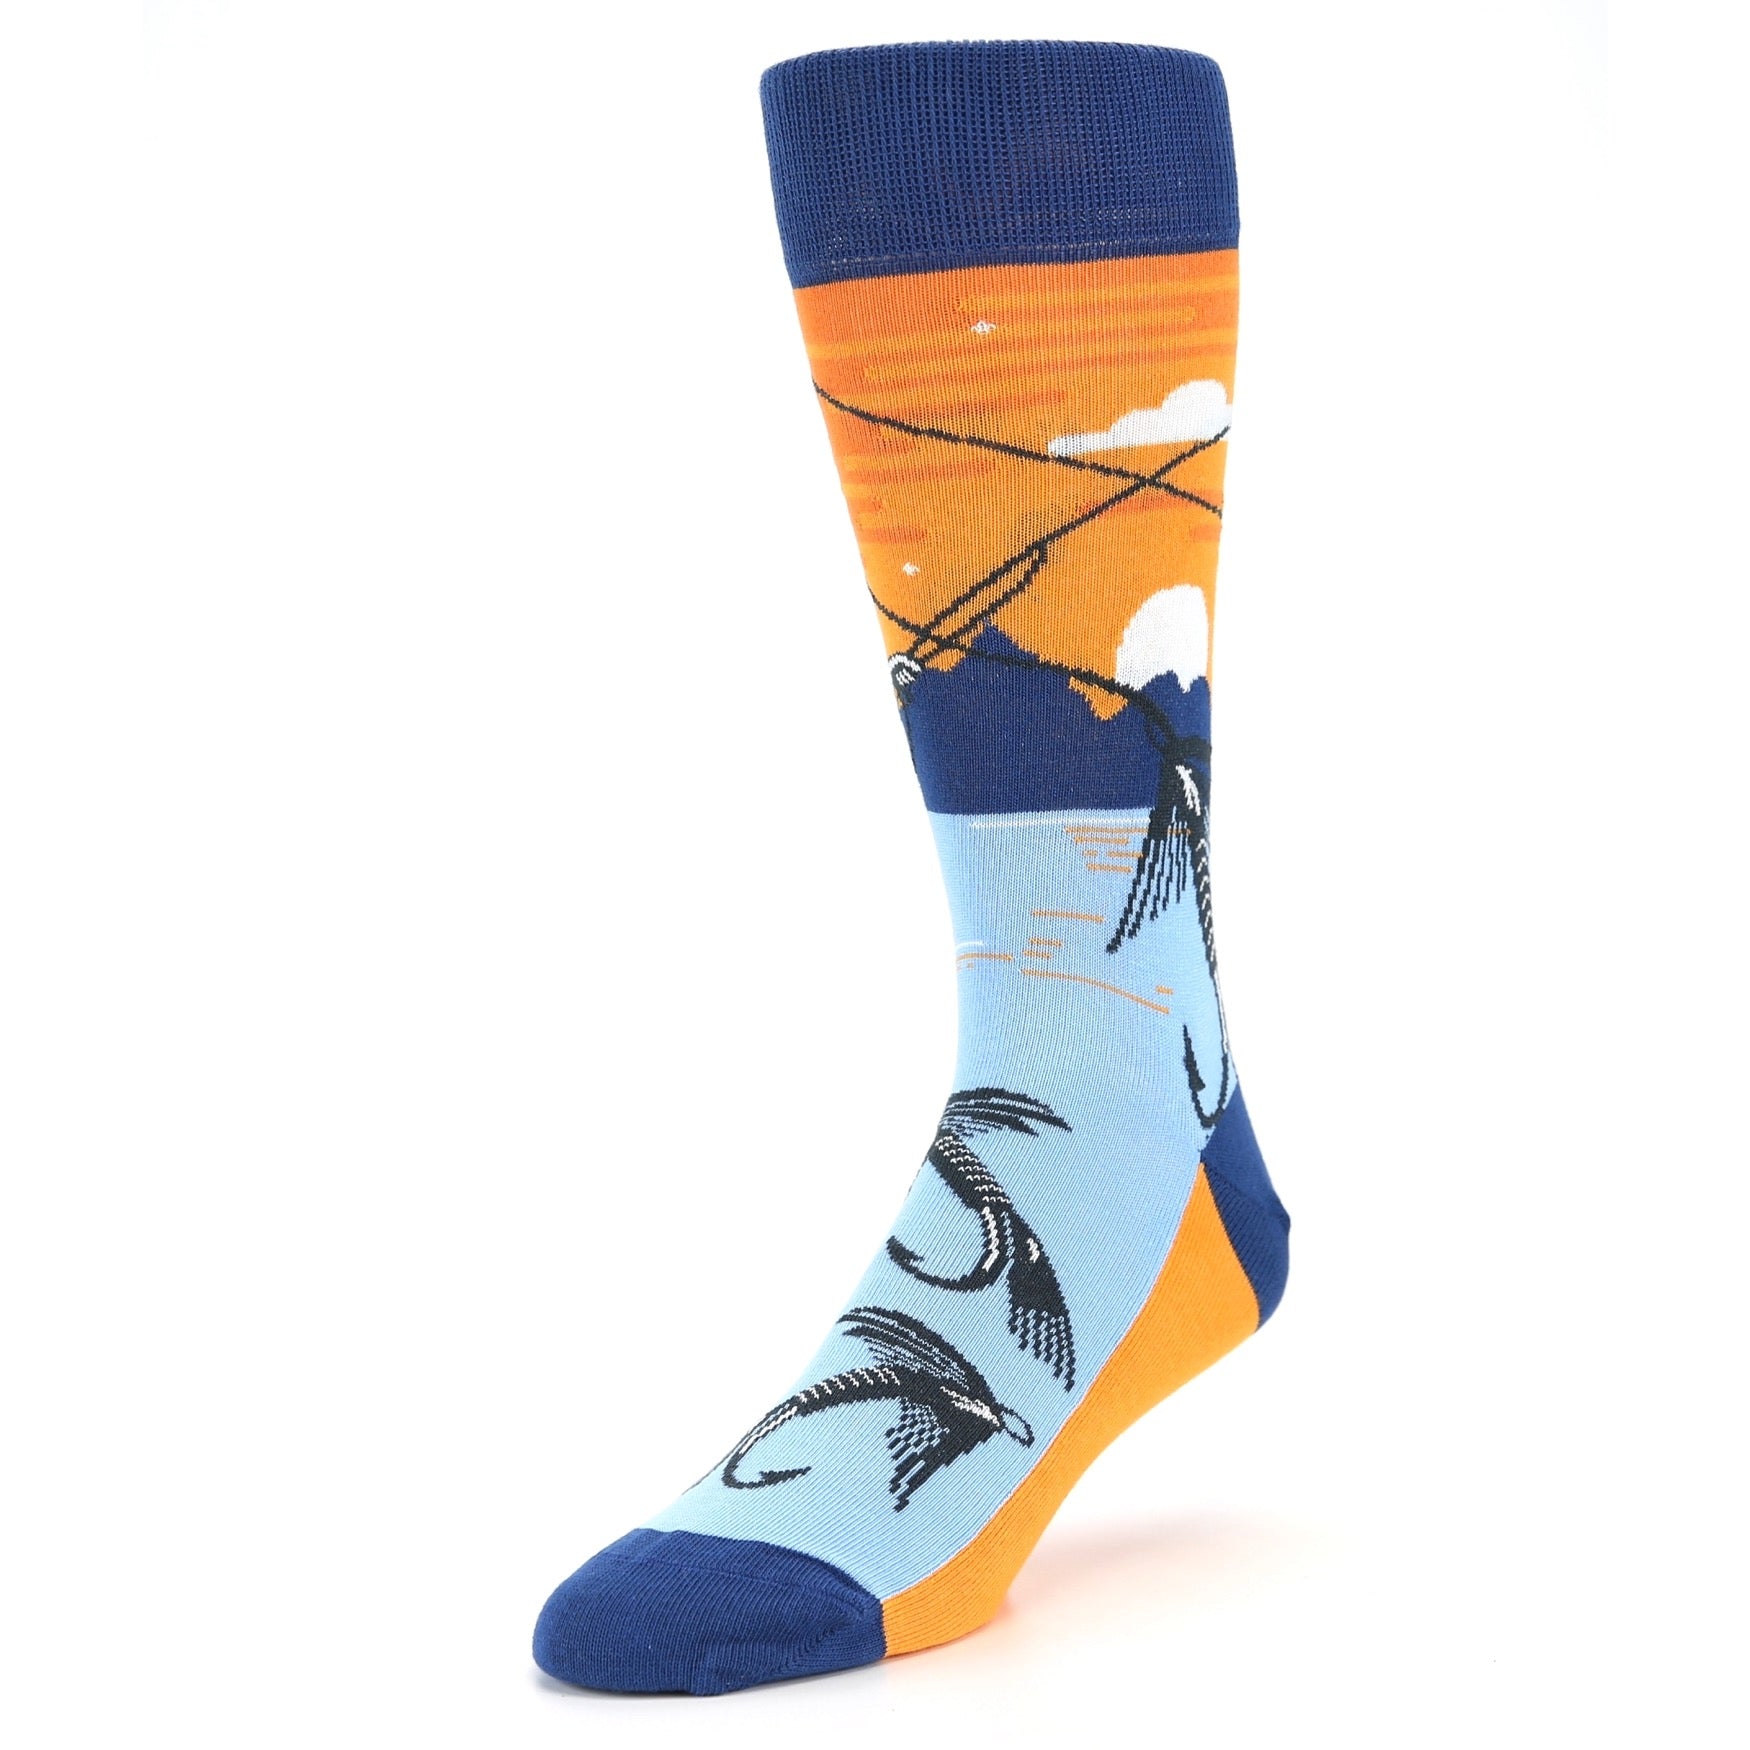 Fly Fishing Socks - Men's Novelty Dress Socks U.S. Men's Shoe Sizes 13-16